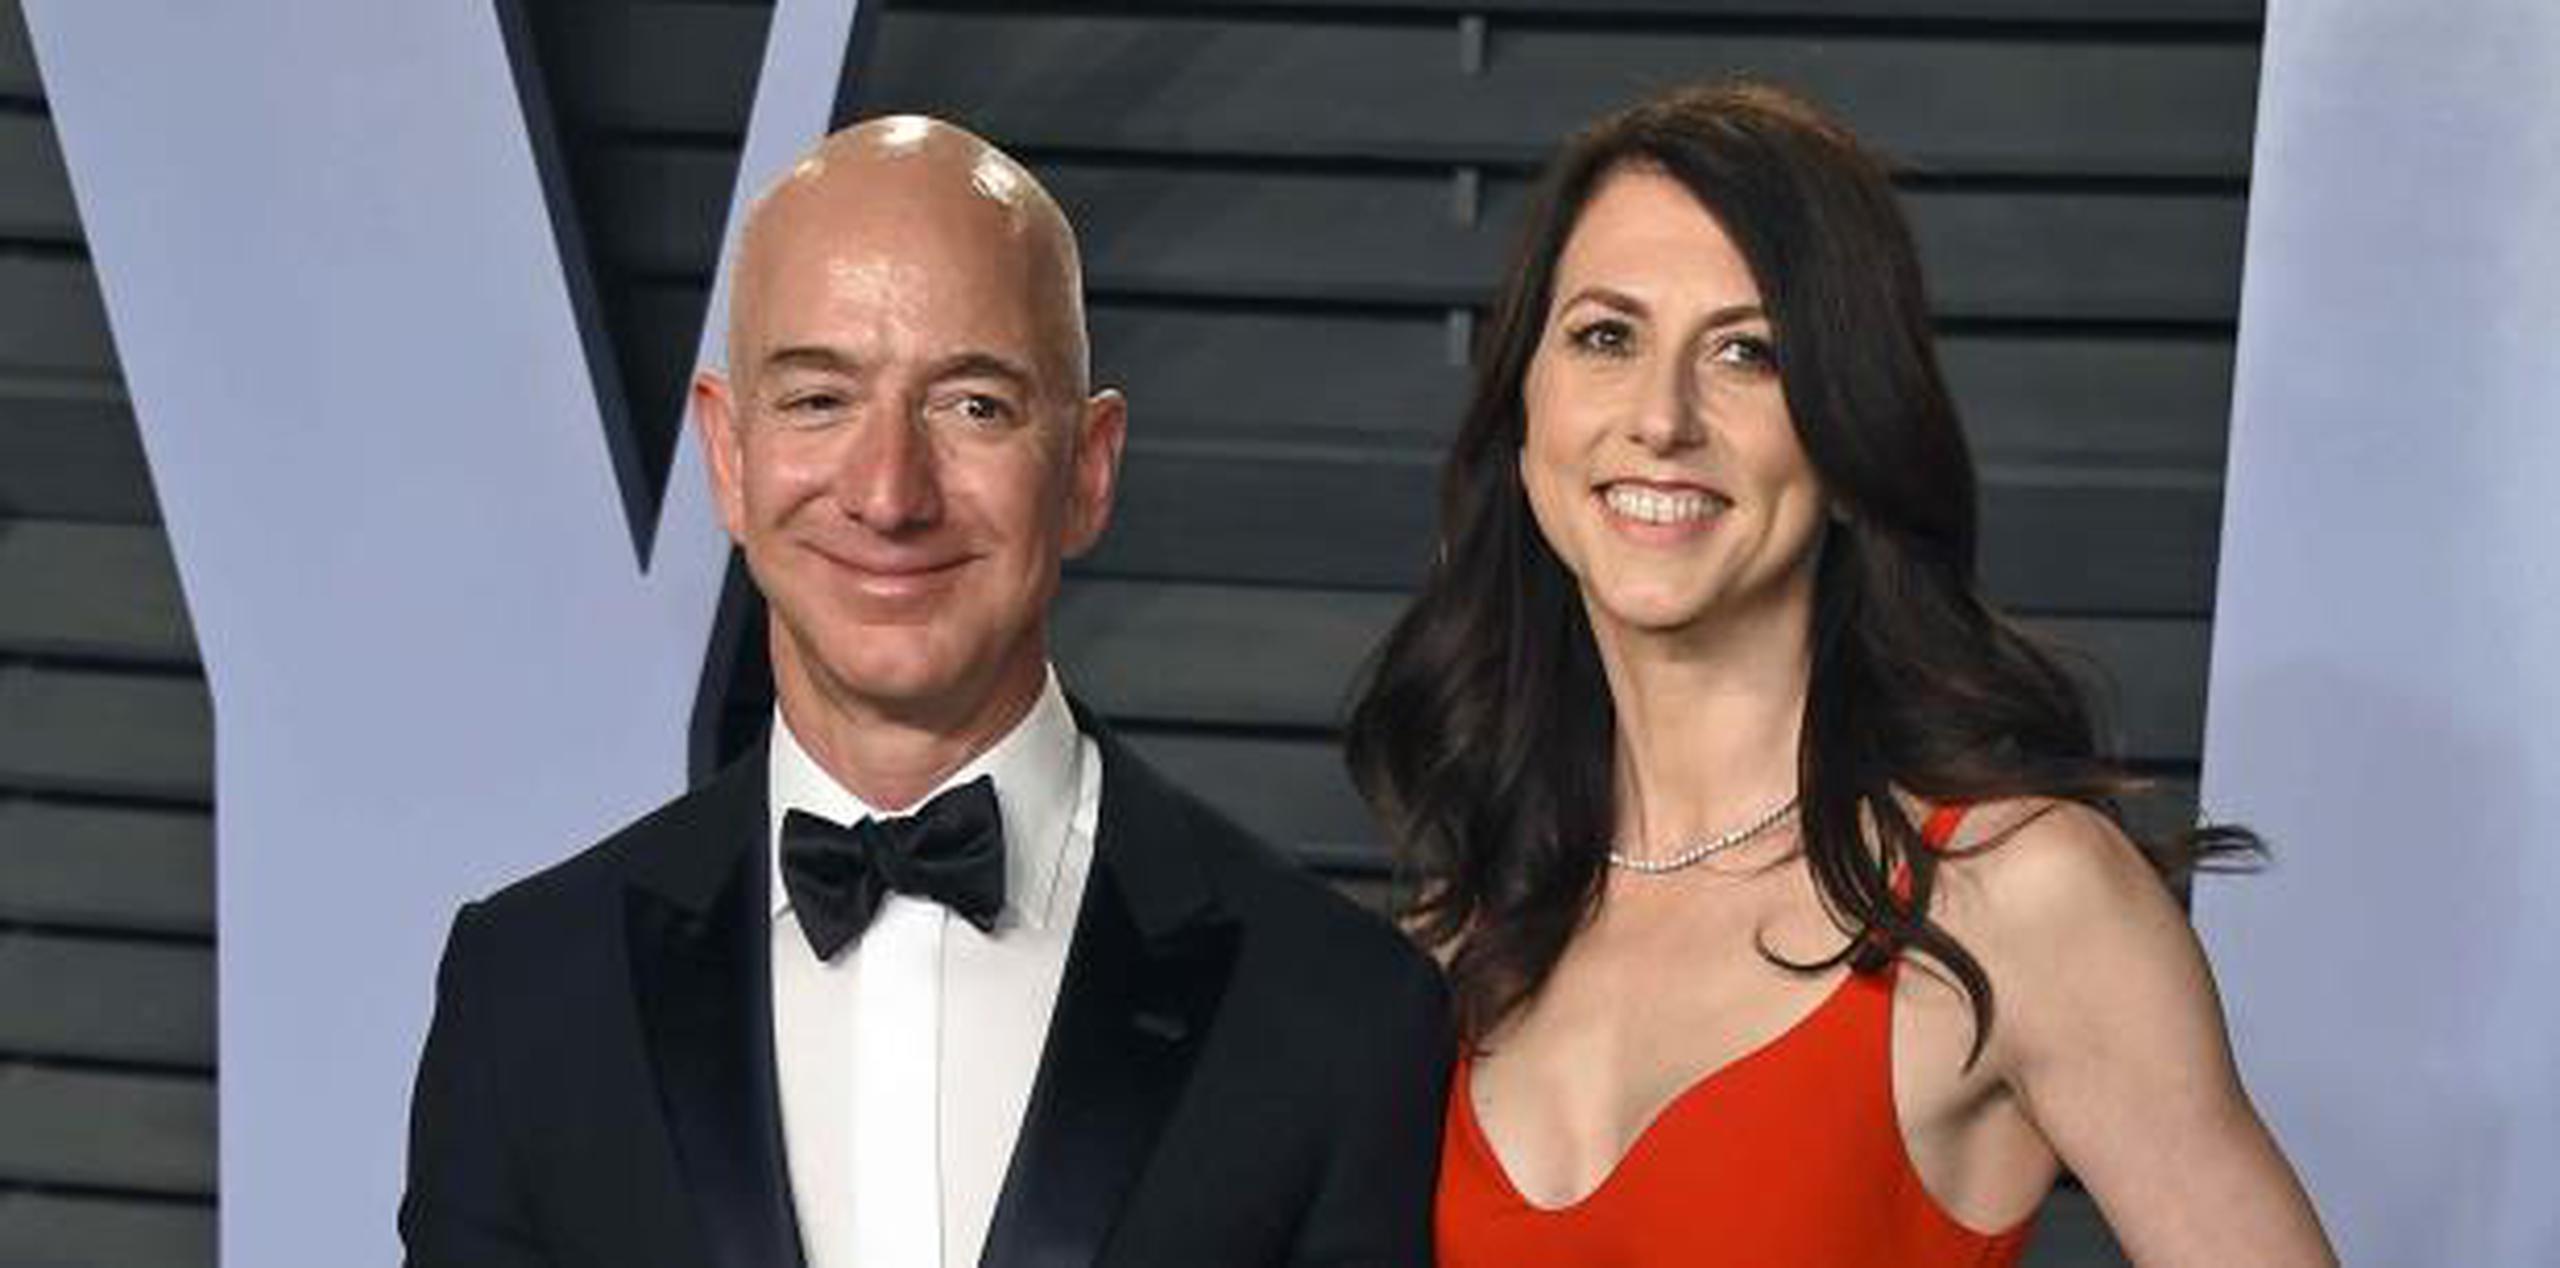 Bezos, aquí con su aún esposa MacKenzie, fundador de Amazon y también propietario del diario The Washington Post, es considerado la persona más rica del mundo, con una fortuna estimada de alrededor $137,000 millones. (archivo)

